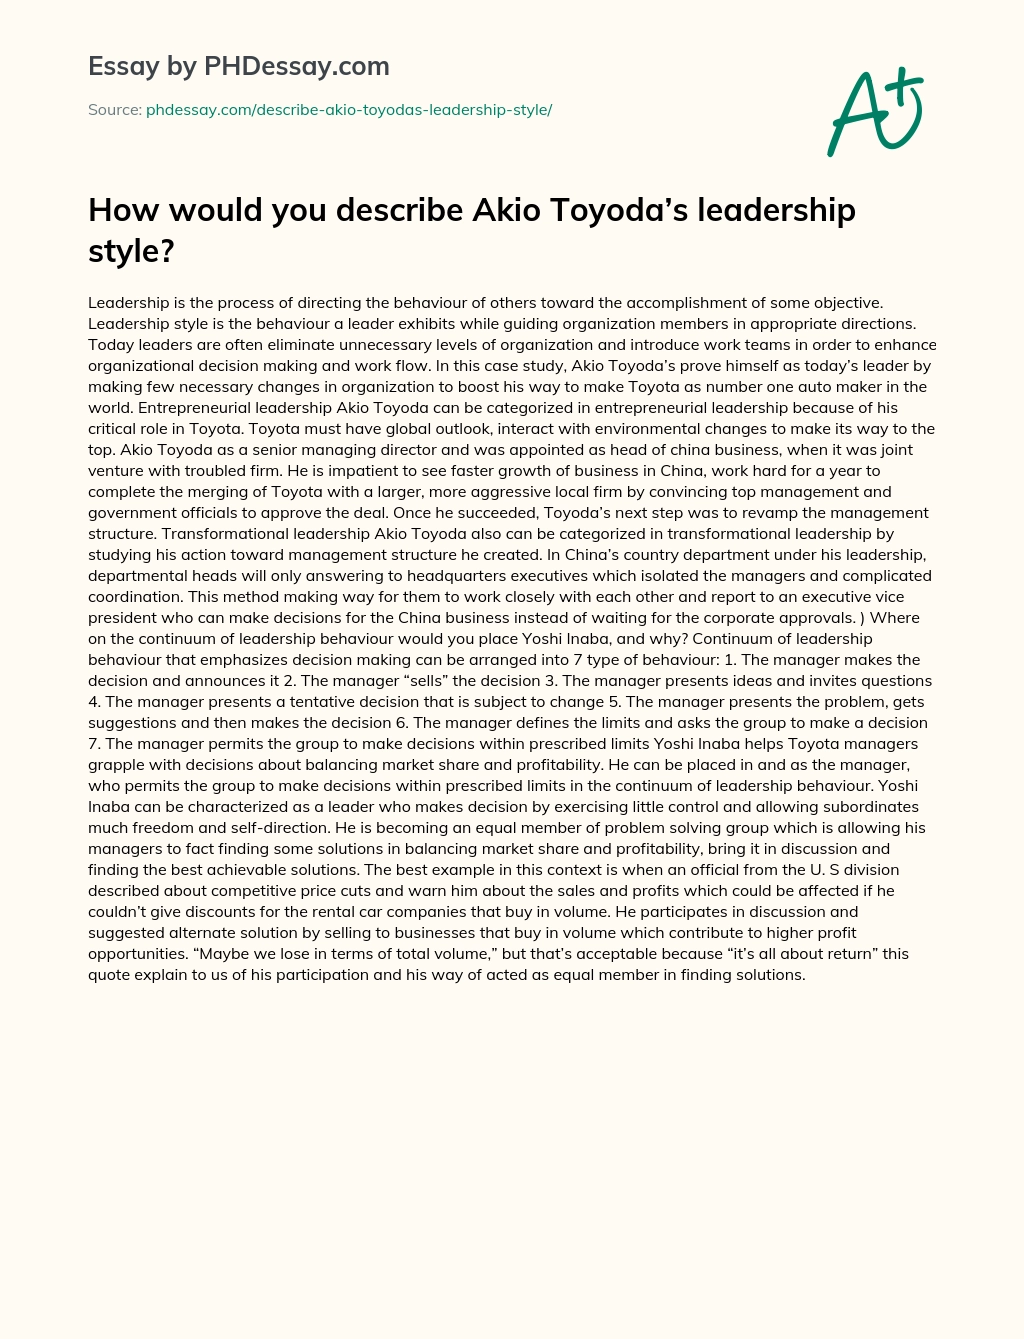 How would you describe Akio Toyoda’s leadership style? essay